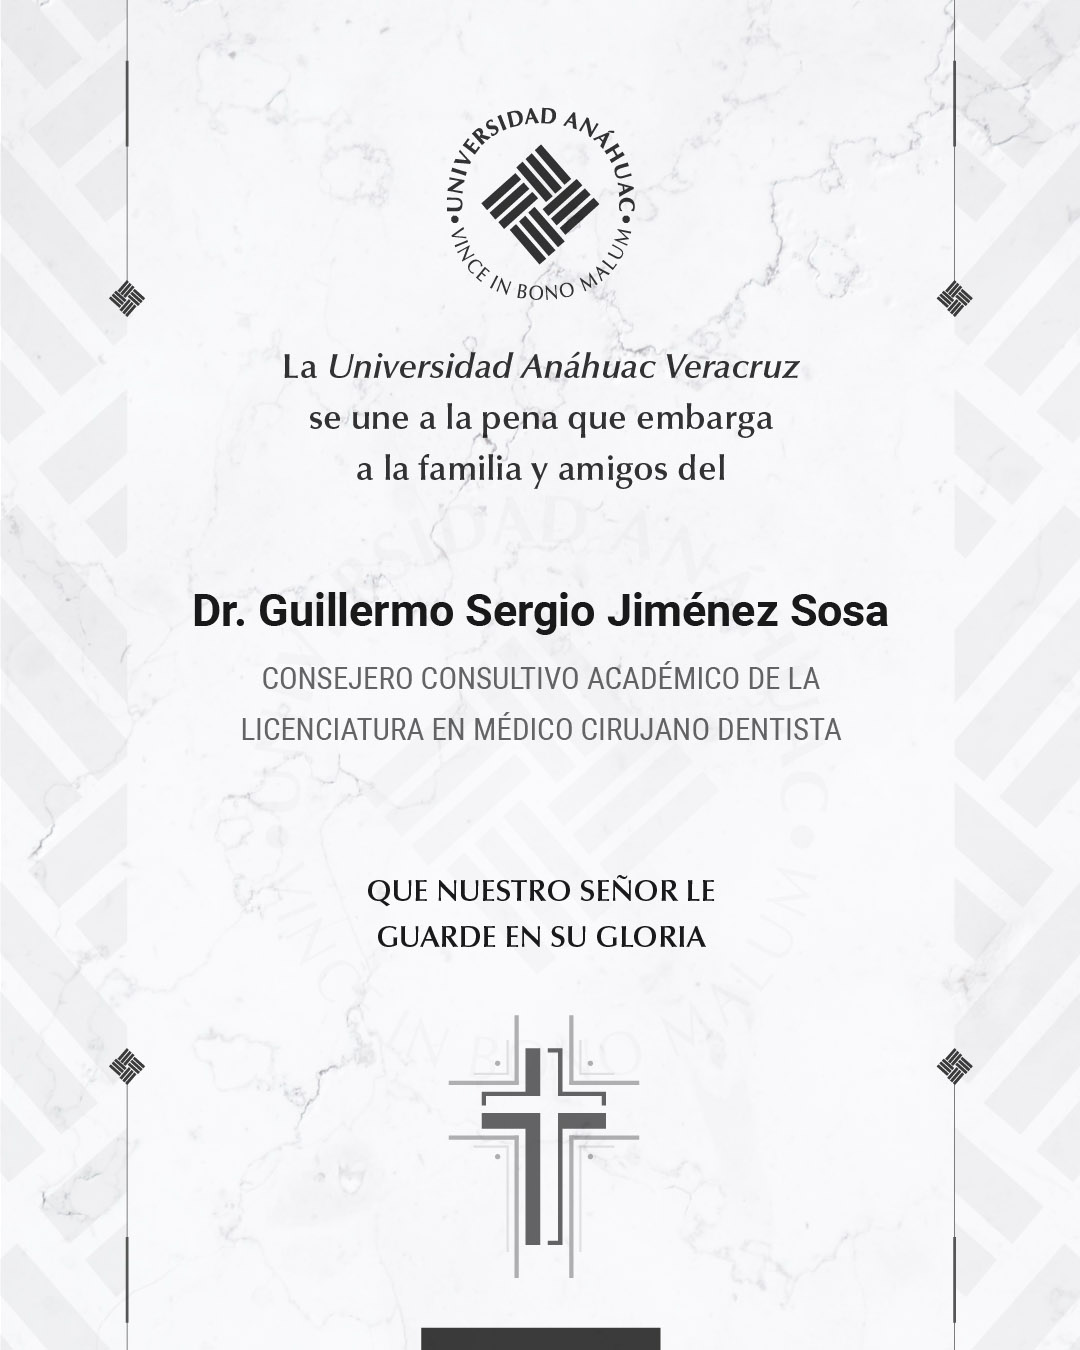 6 / 18 - Dr. Guillermo Sergio Jiménez Sosa